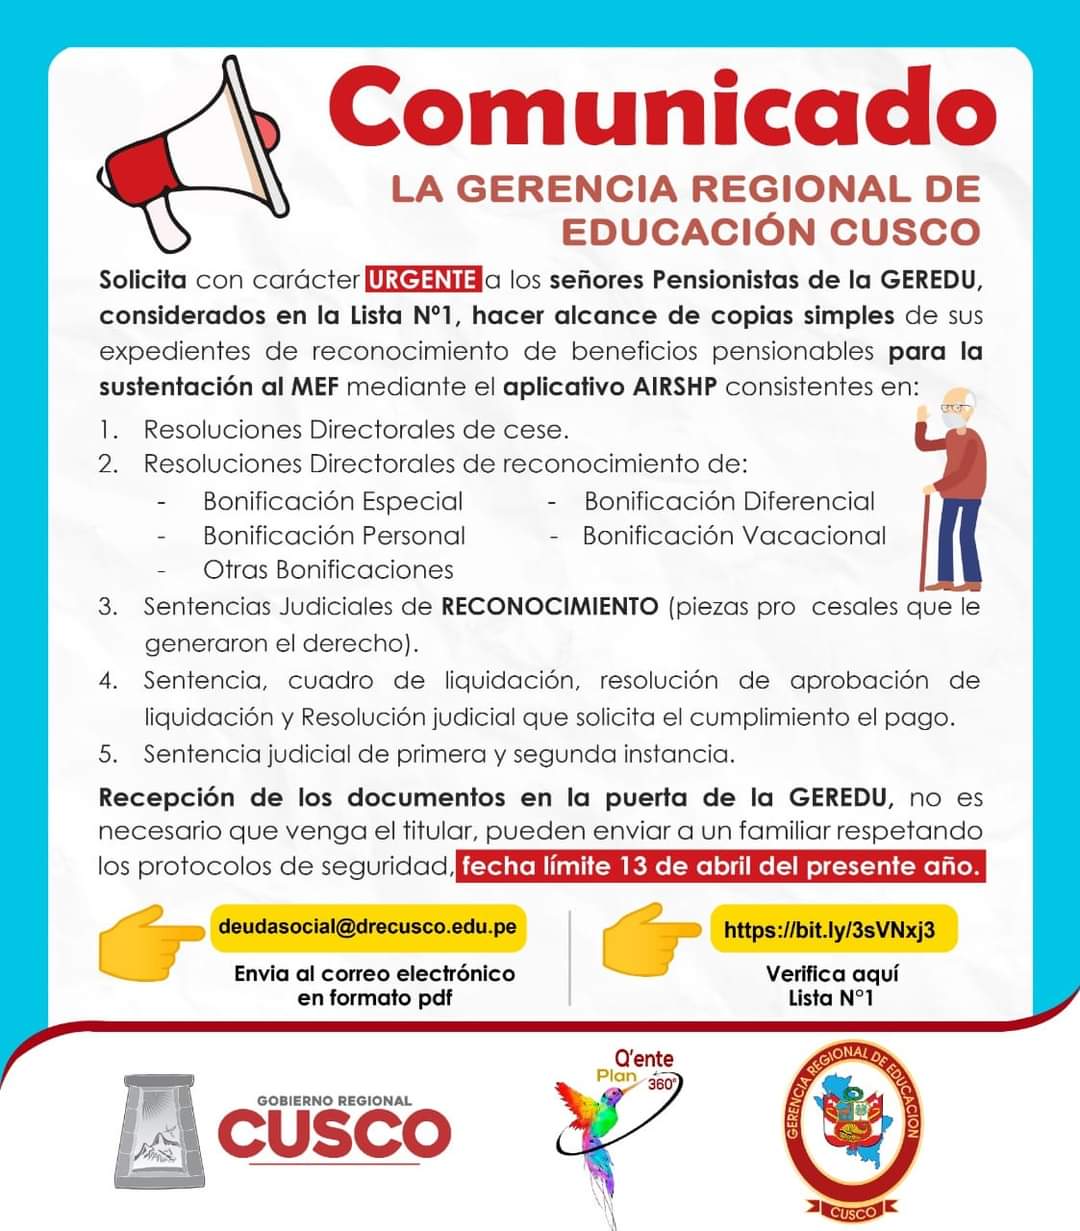 COMUNICADO URGENTE - GERENCIA REGIONAL DE EDUCACION CUSCO